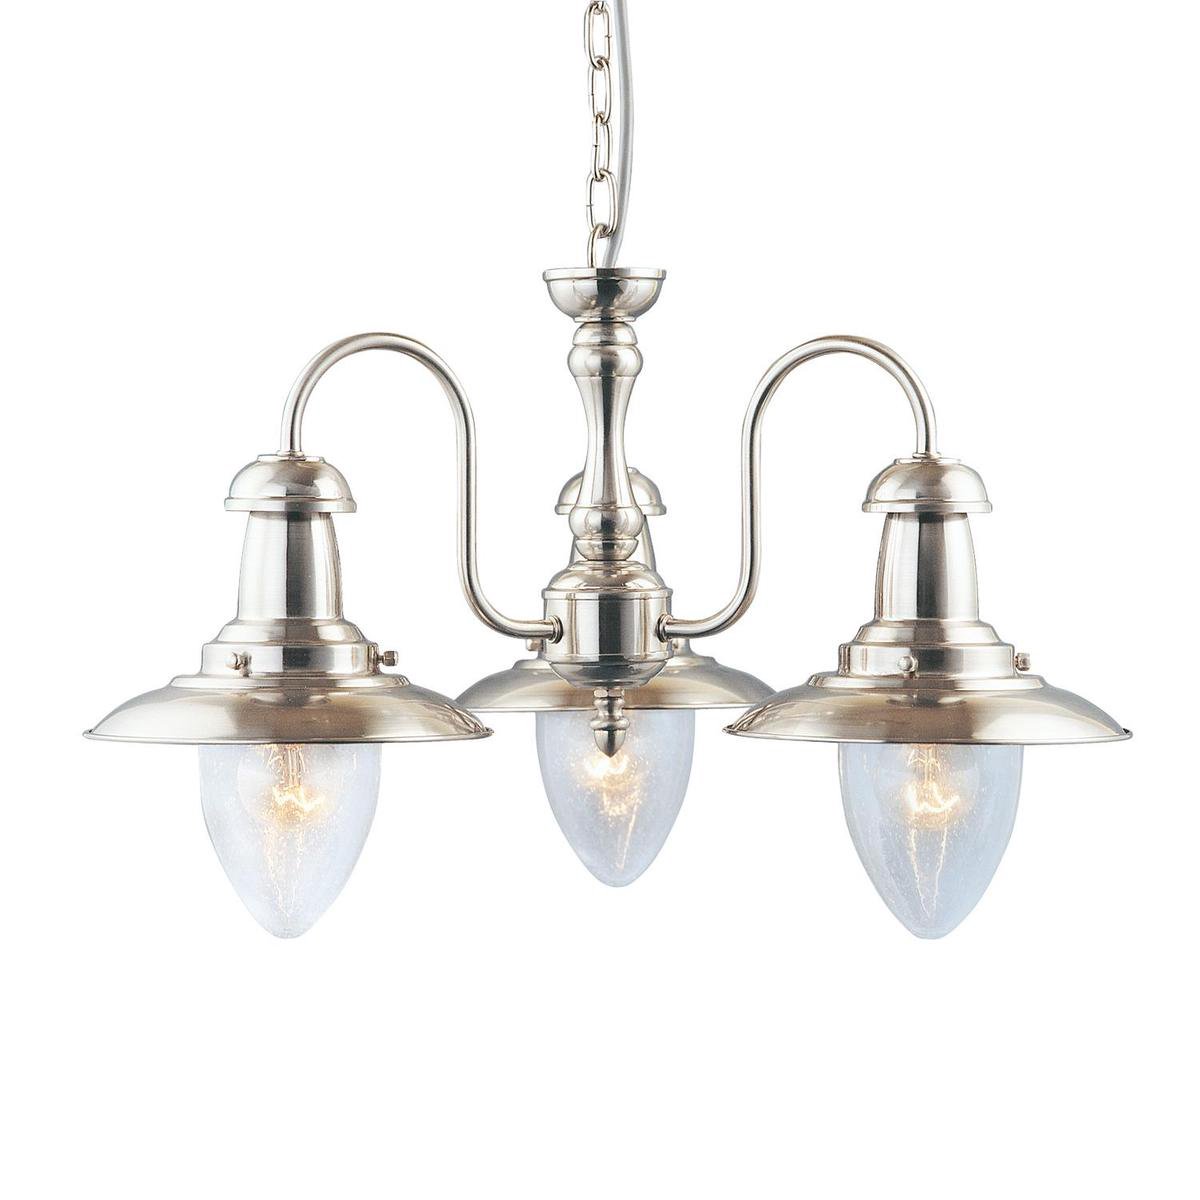 Zilveren hanglamp Fisherman 3-lichts - 5333-3SS